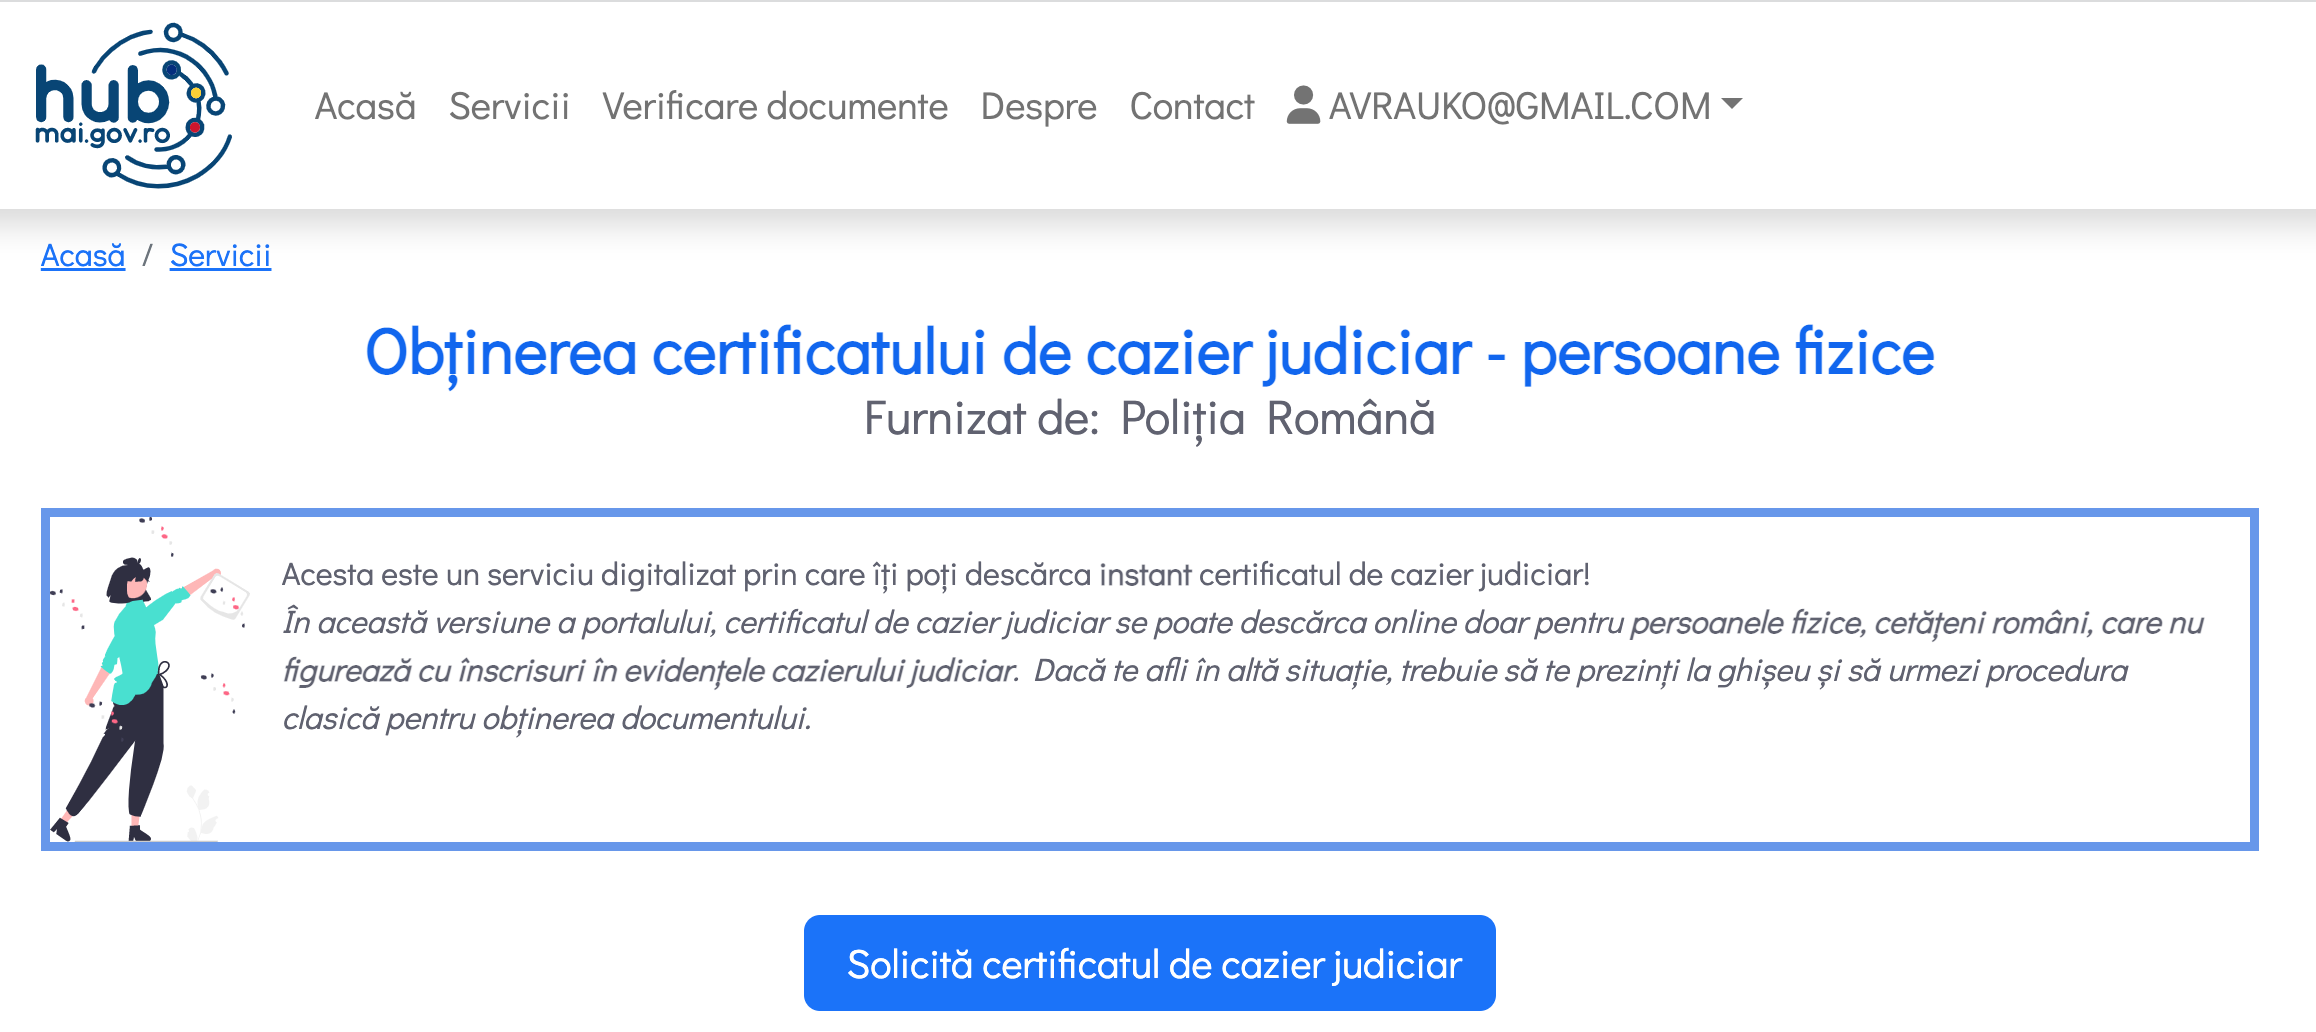 Certificatul de cazier judicar poate fi eliberat online de pe ghiseul.ro